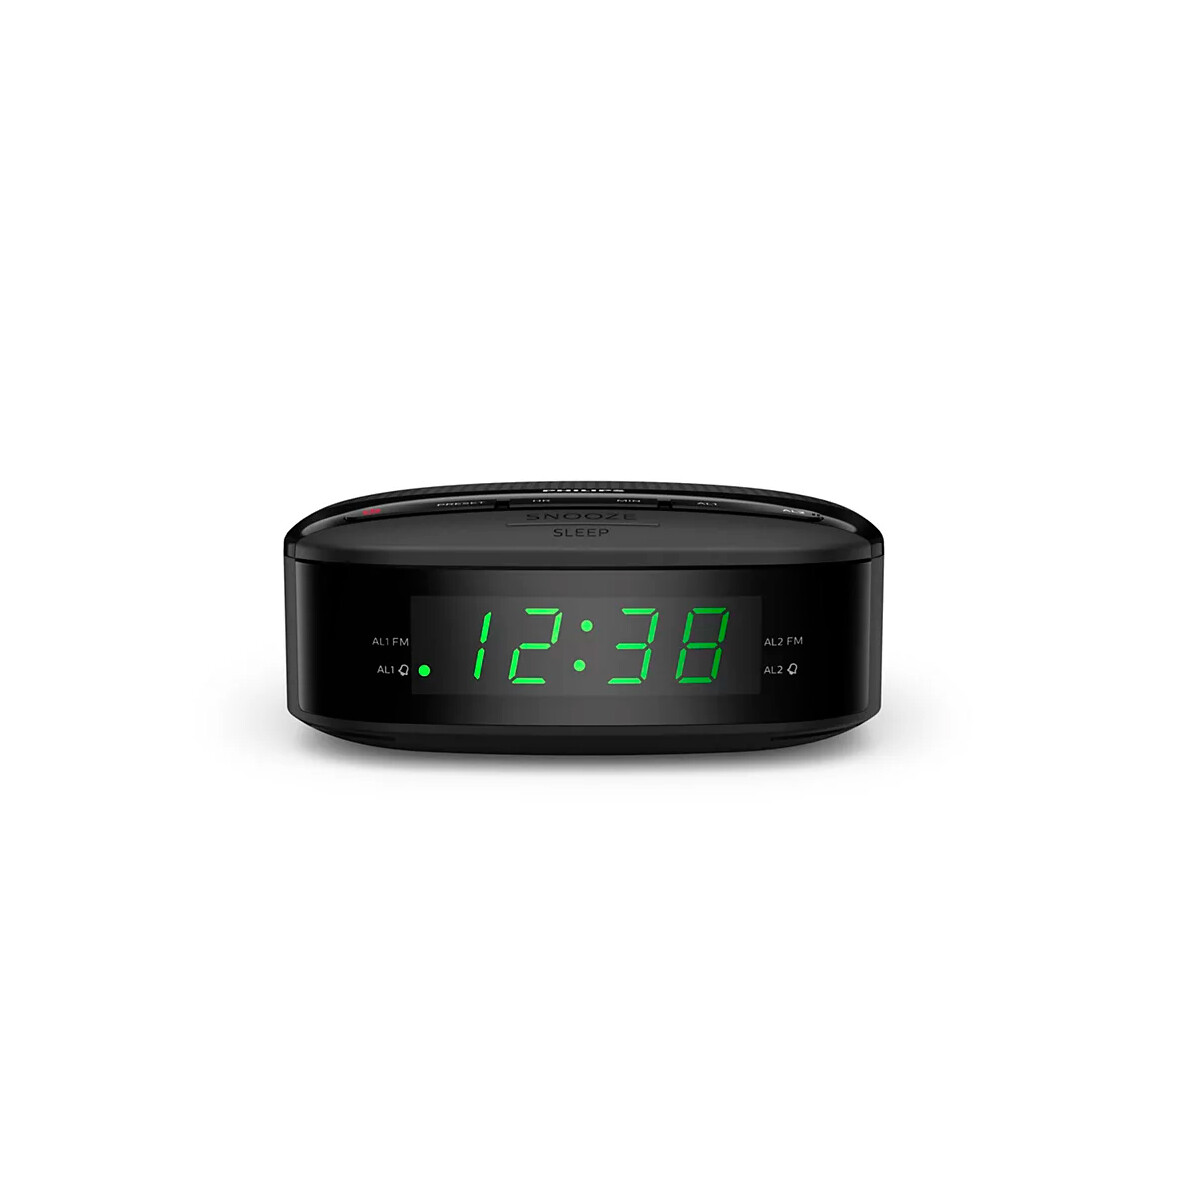 Radio Reloj Despertador Philips R3205/12 